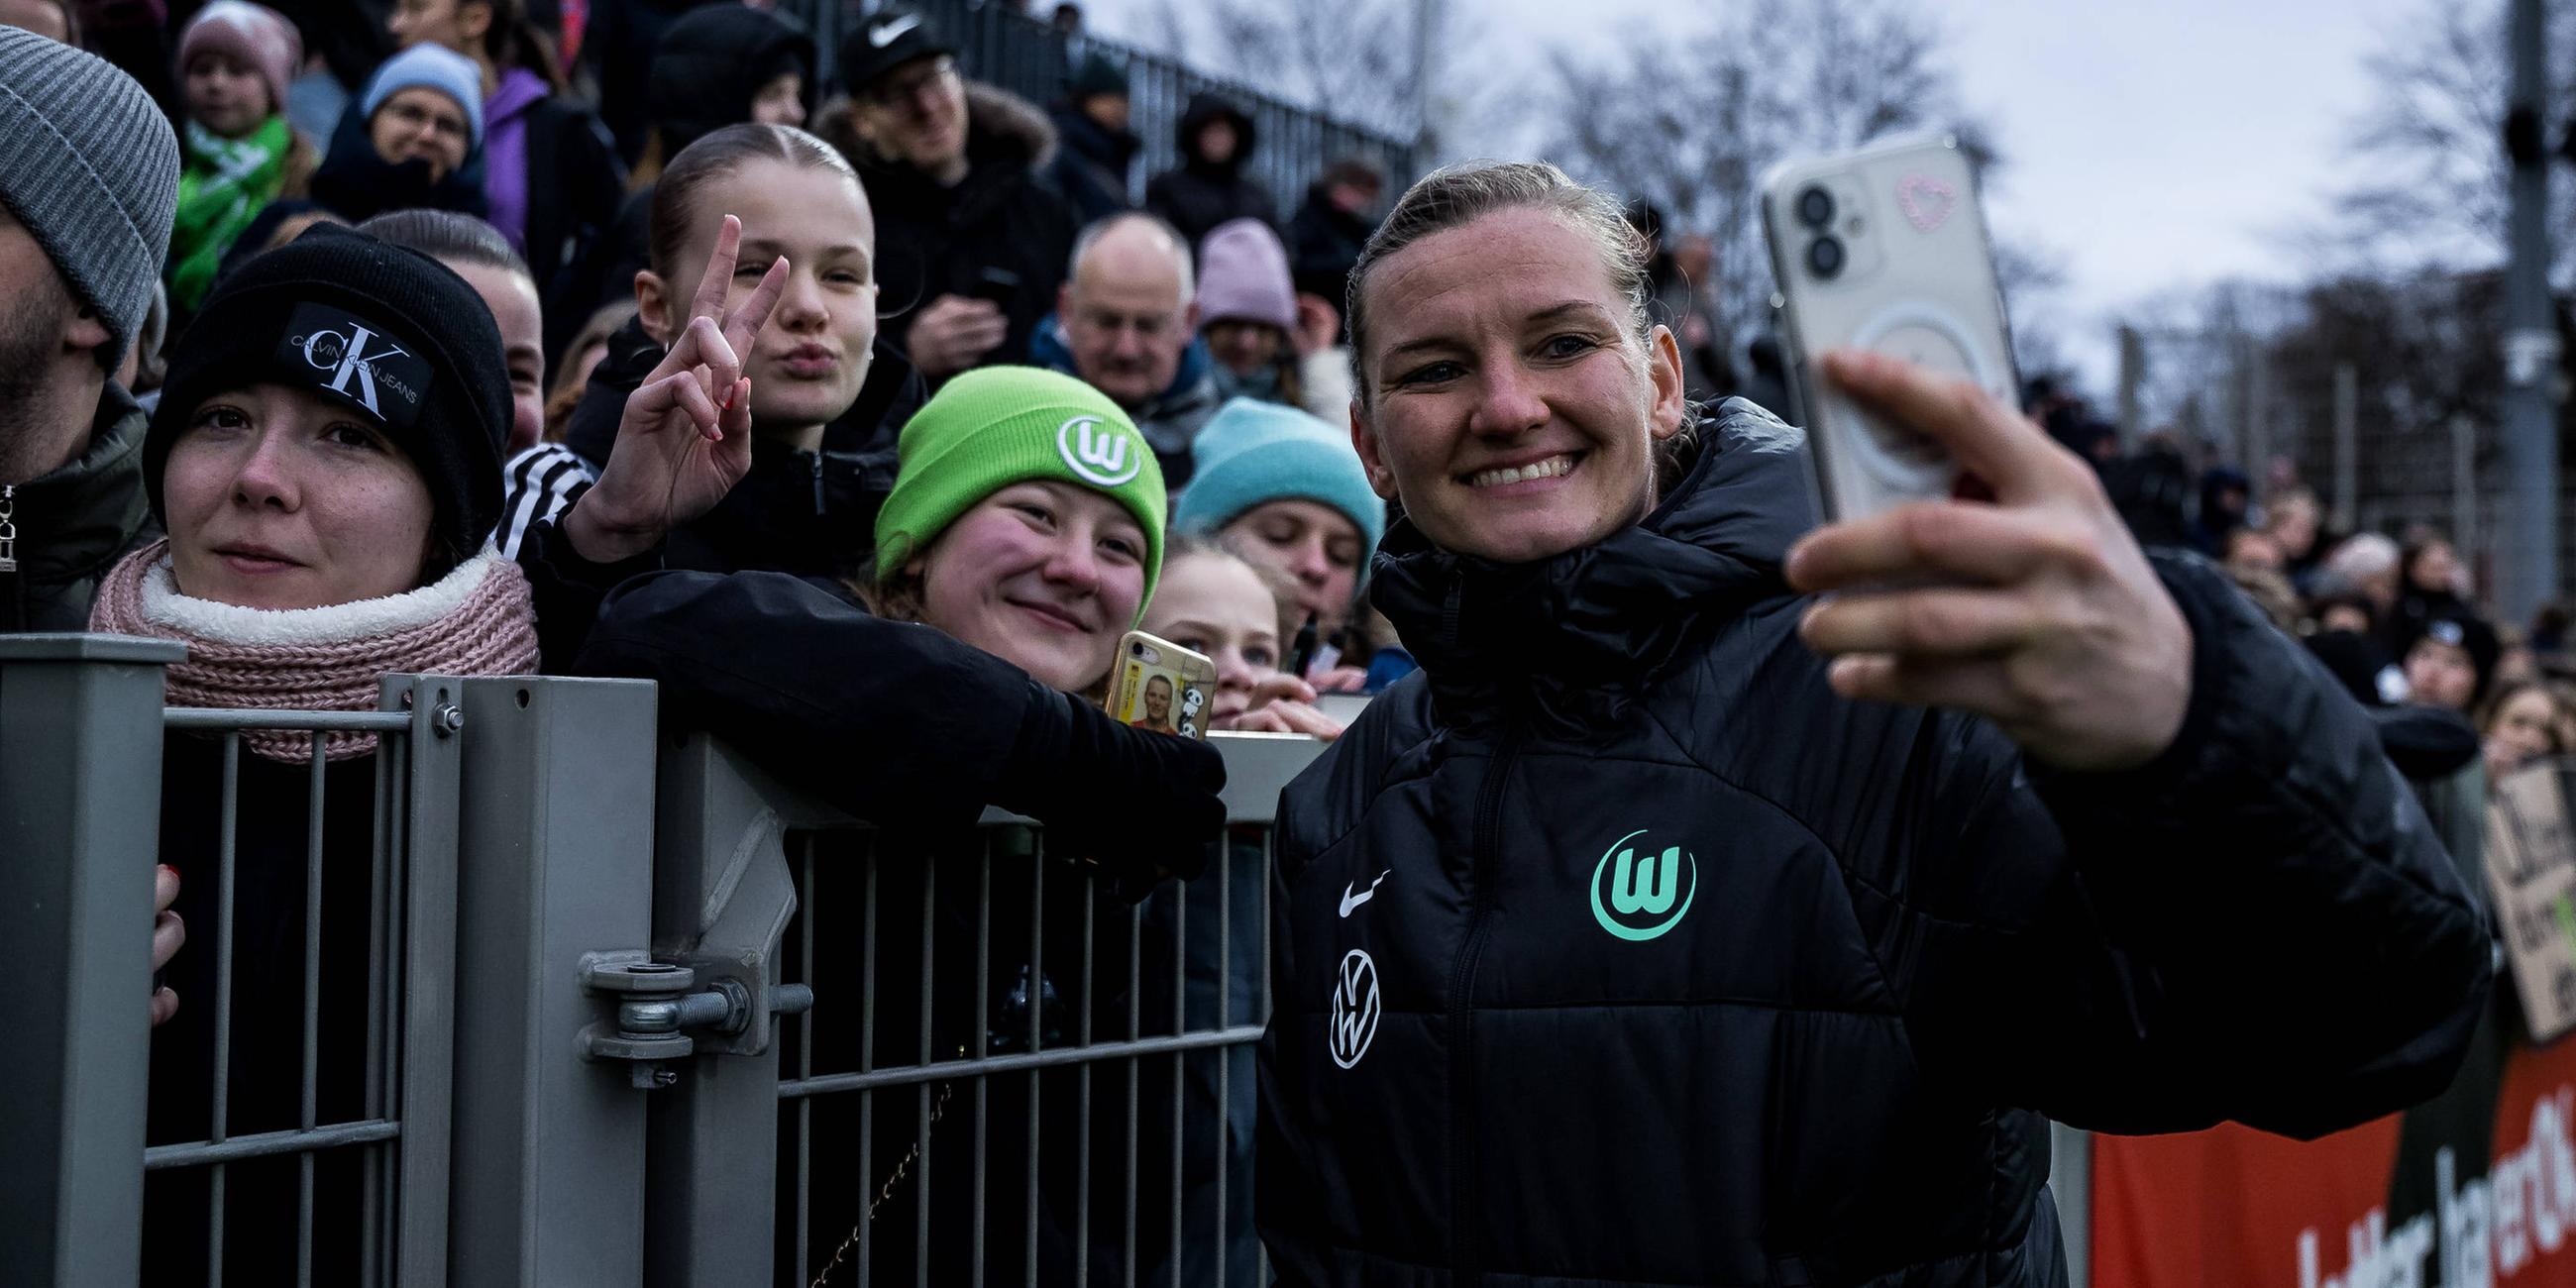 Alexandra Popp (VfL Wolfsburg. 11) macht nach dem Spiel einen Selfie mit Fans